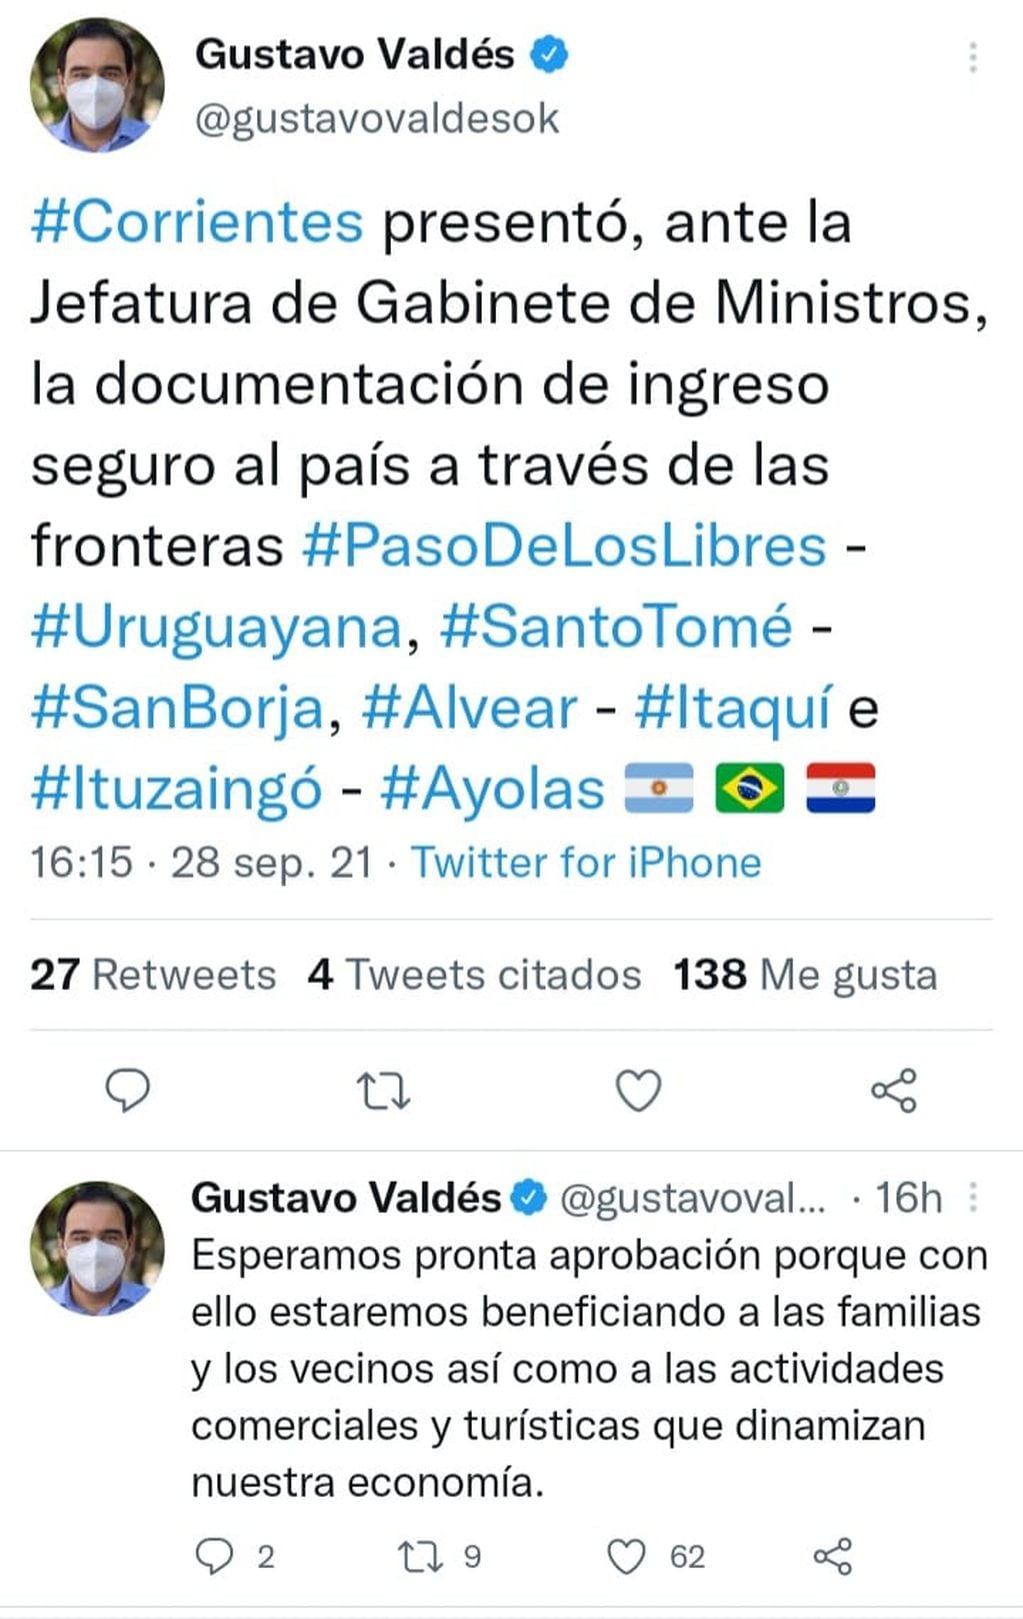 Anuncio oficial del gobernador correntino por el pedido formal de apertura de los pasos fronterizos en Corrientes.